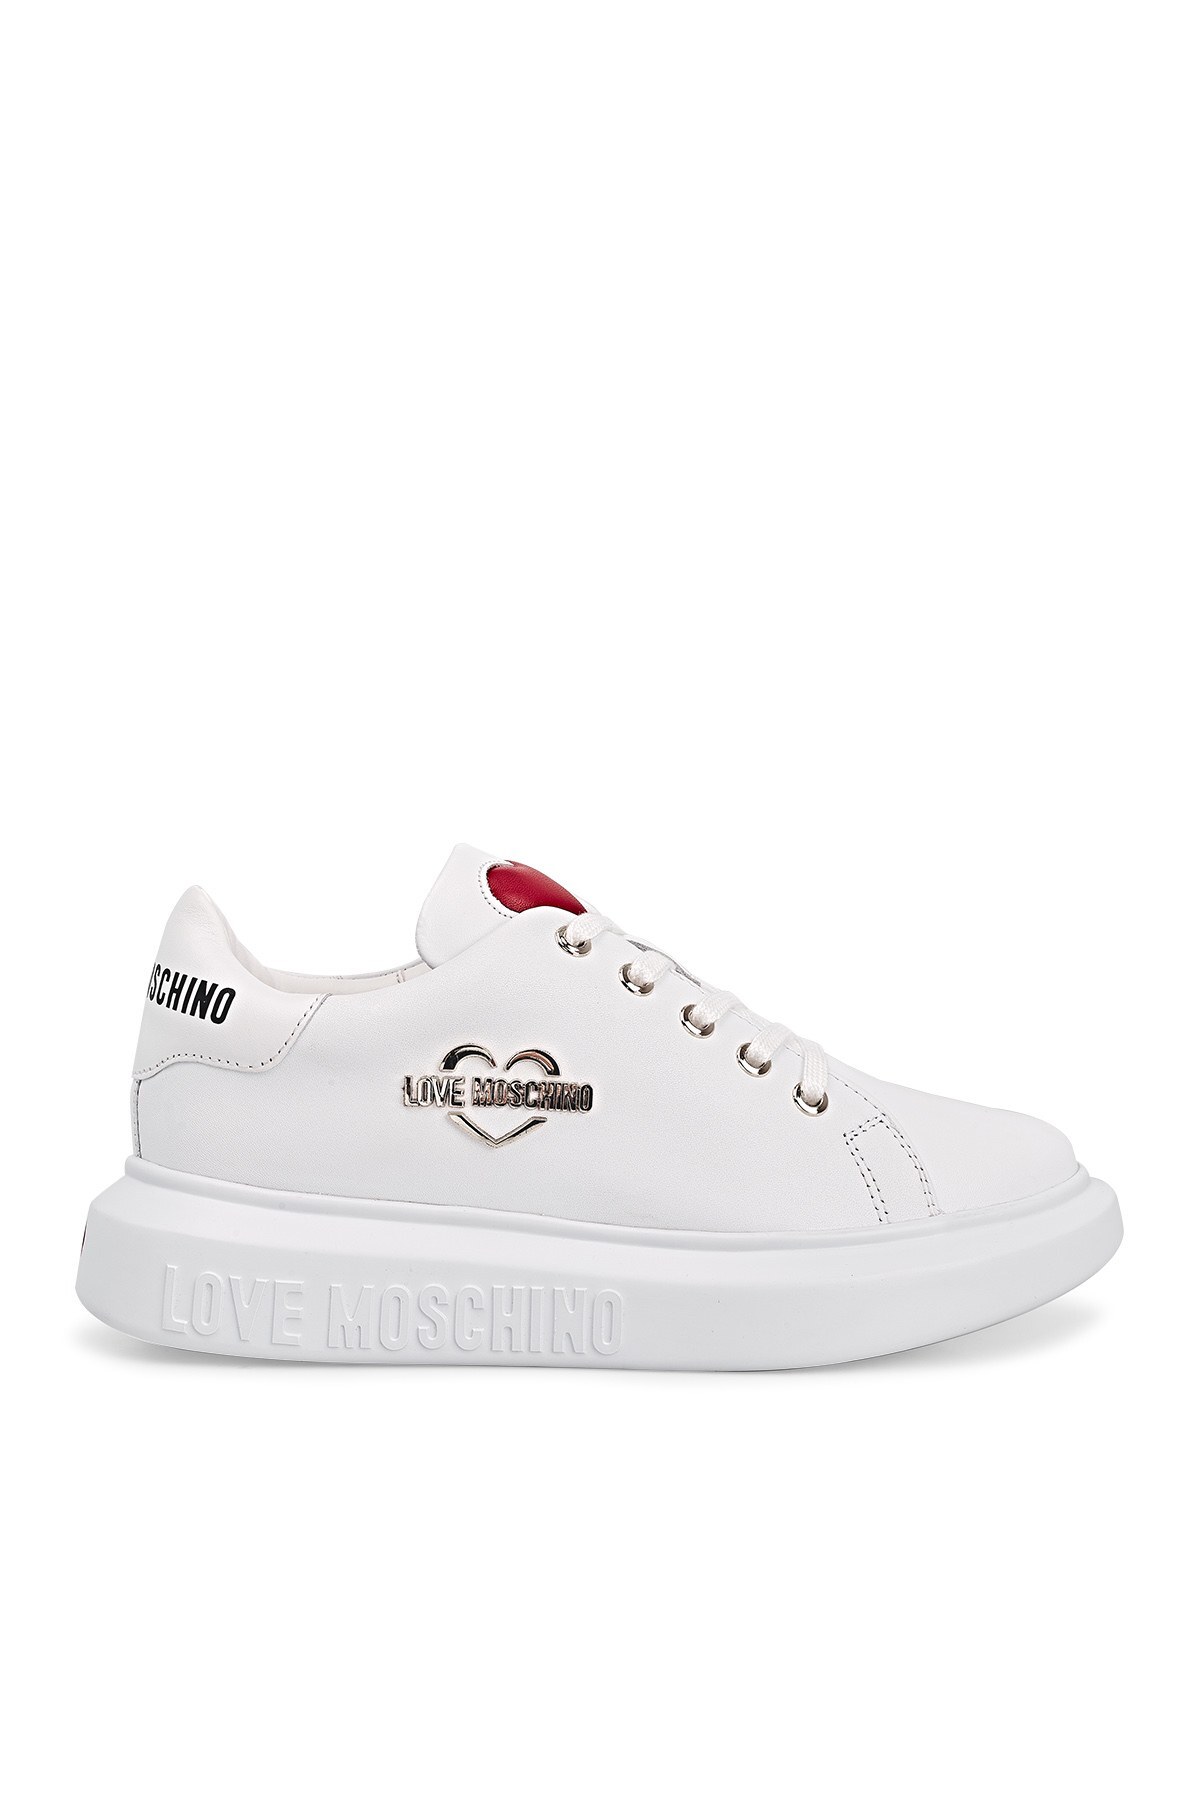 Love Moschino Sneaker Kadın Ayakkabı JA15204G1CIA0100 BEYAZ